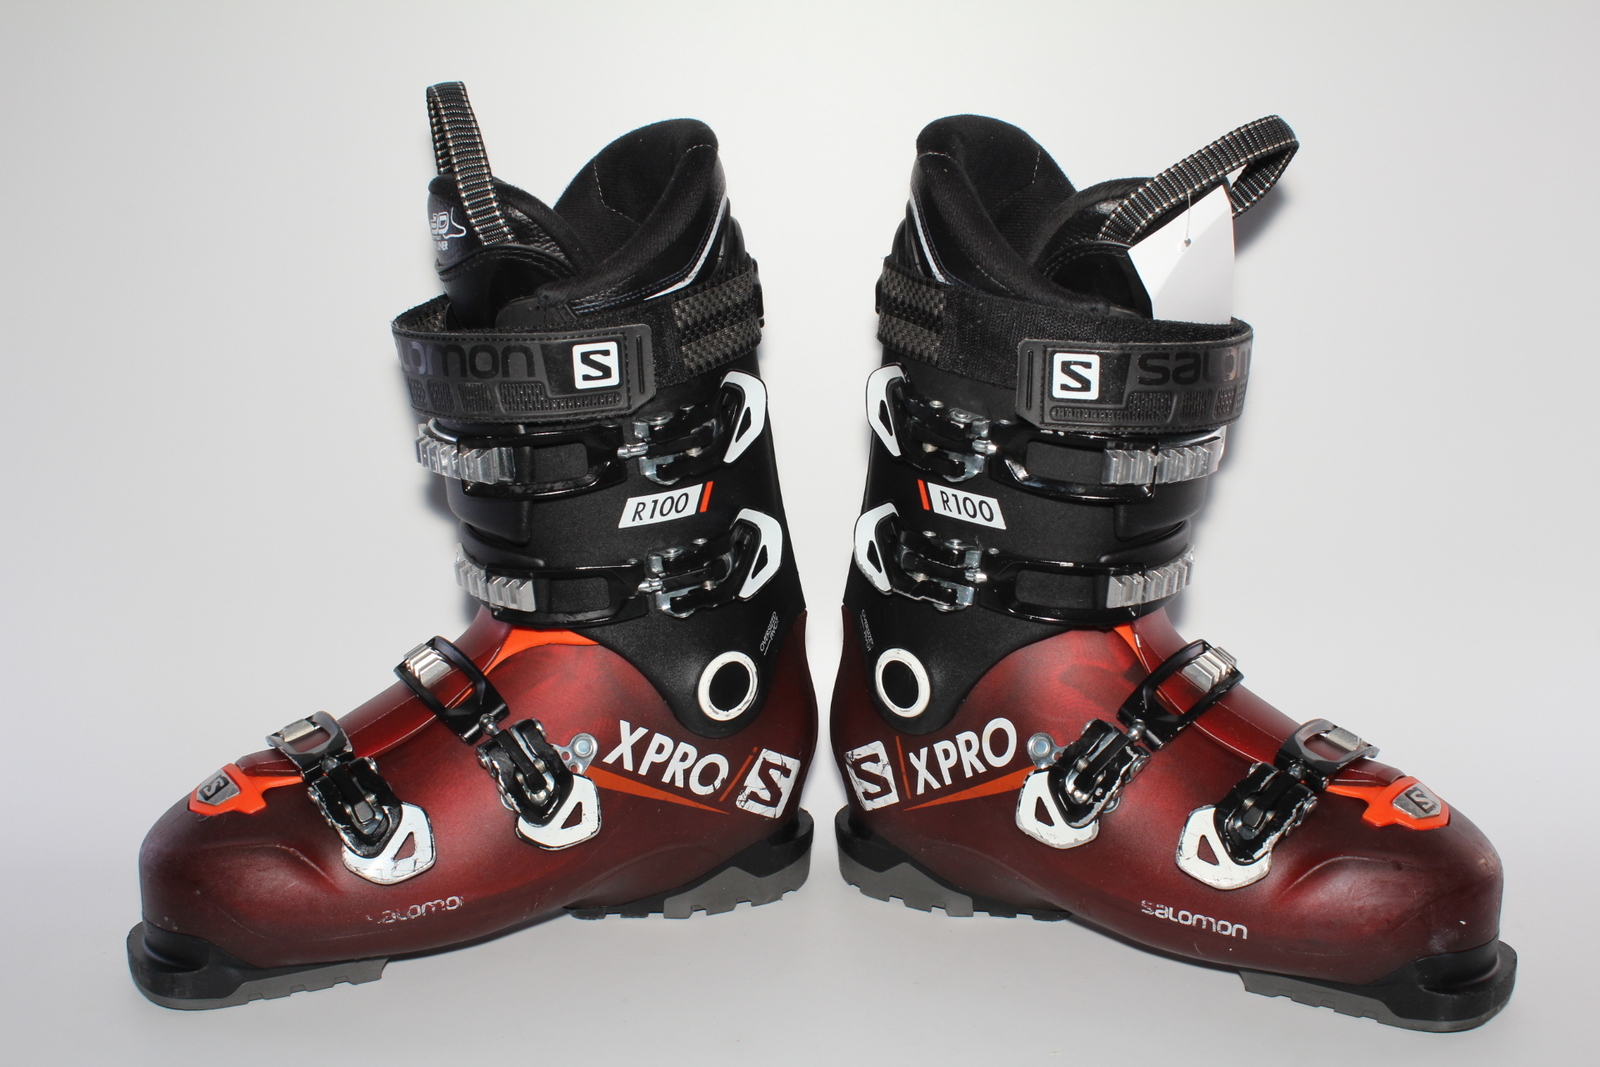 Lyžařské boty Salomon X Pro R100 vel. EU42 flexe 100